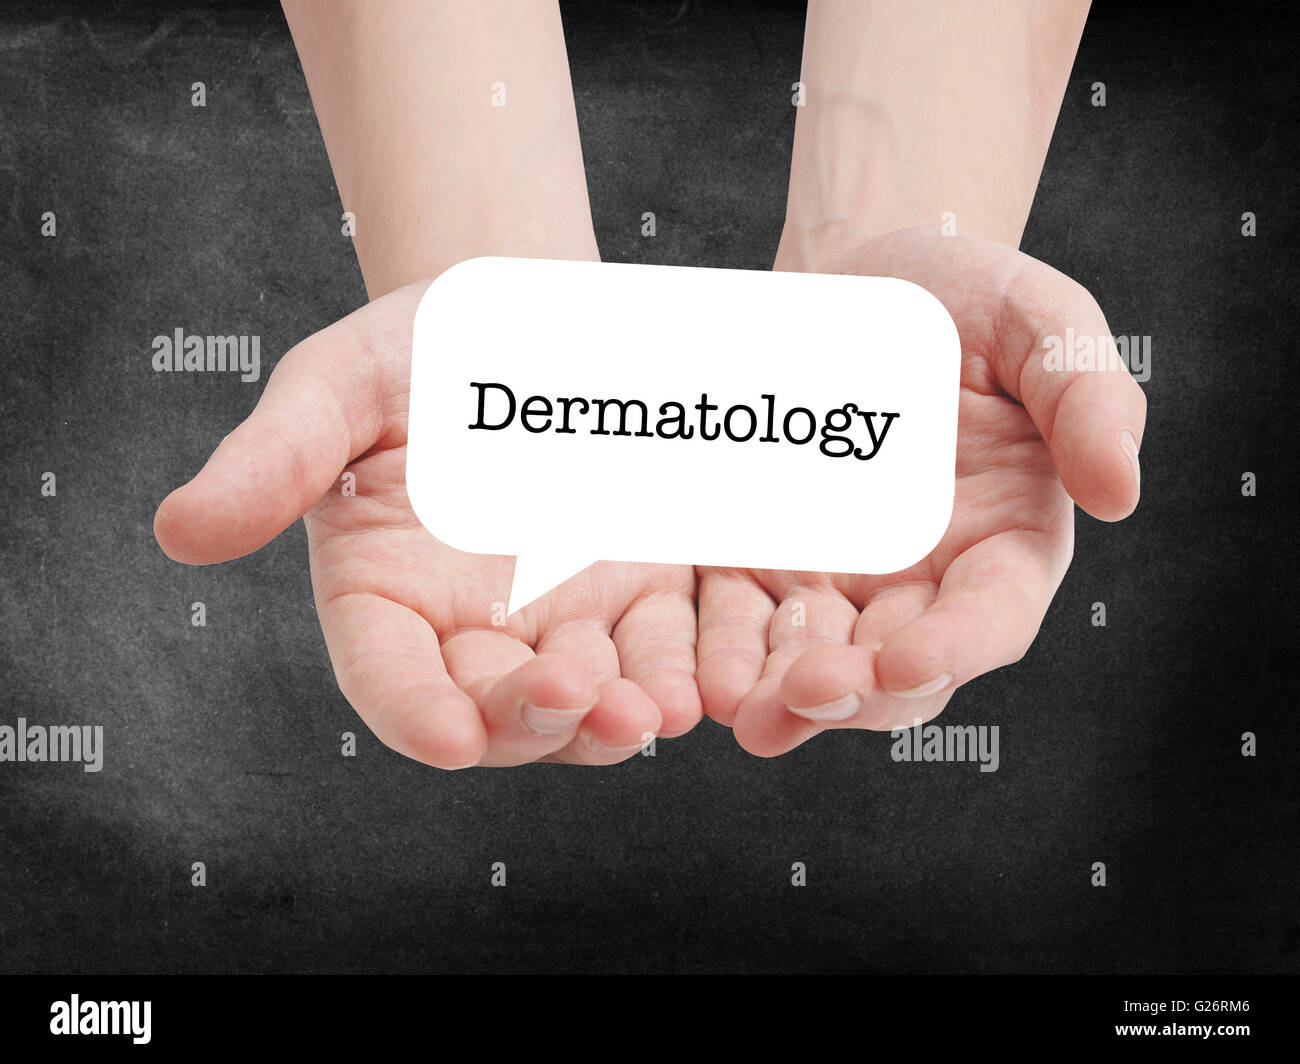 Dermatologie, geschrieben auf einem speechbubble Stockfoto